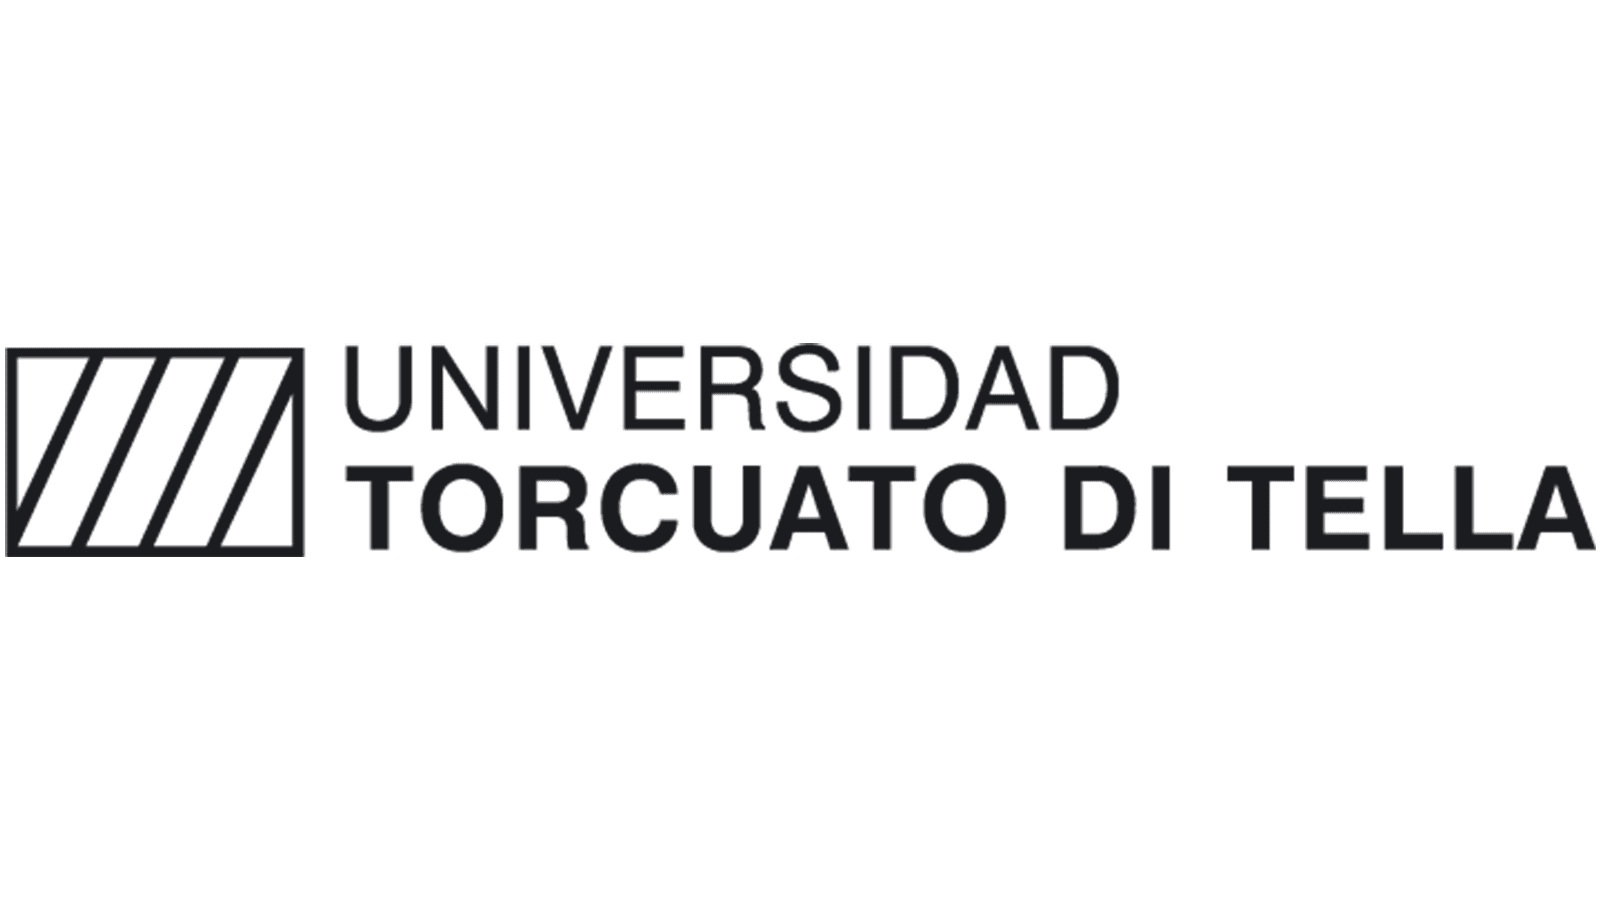 Universidad Torcuato Di Tella logo